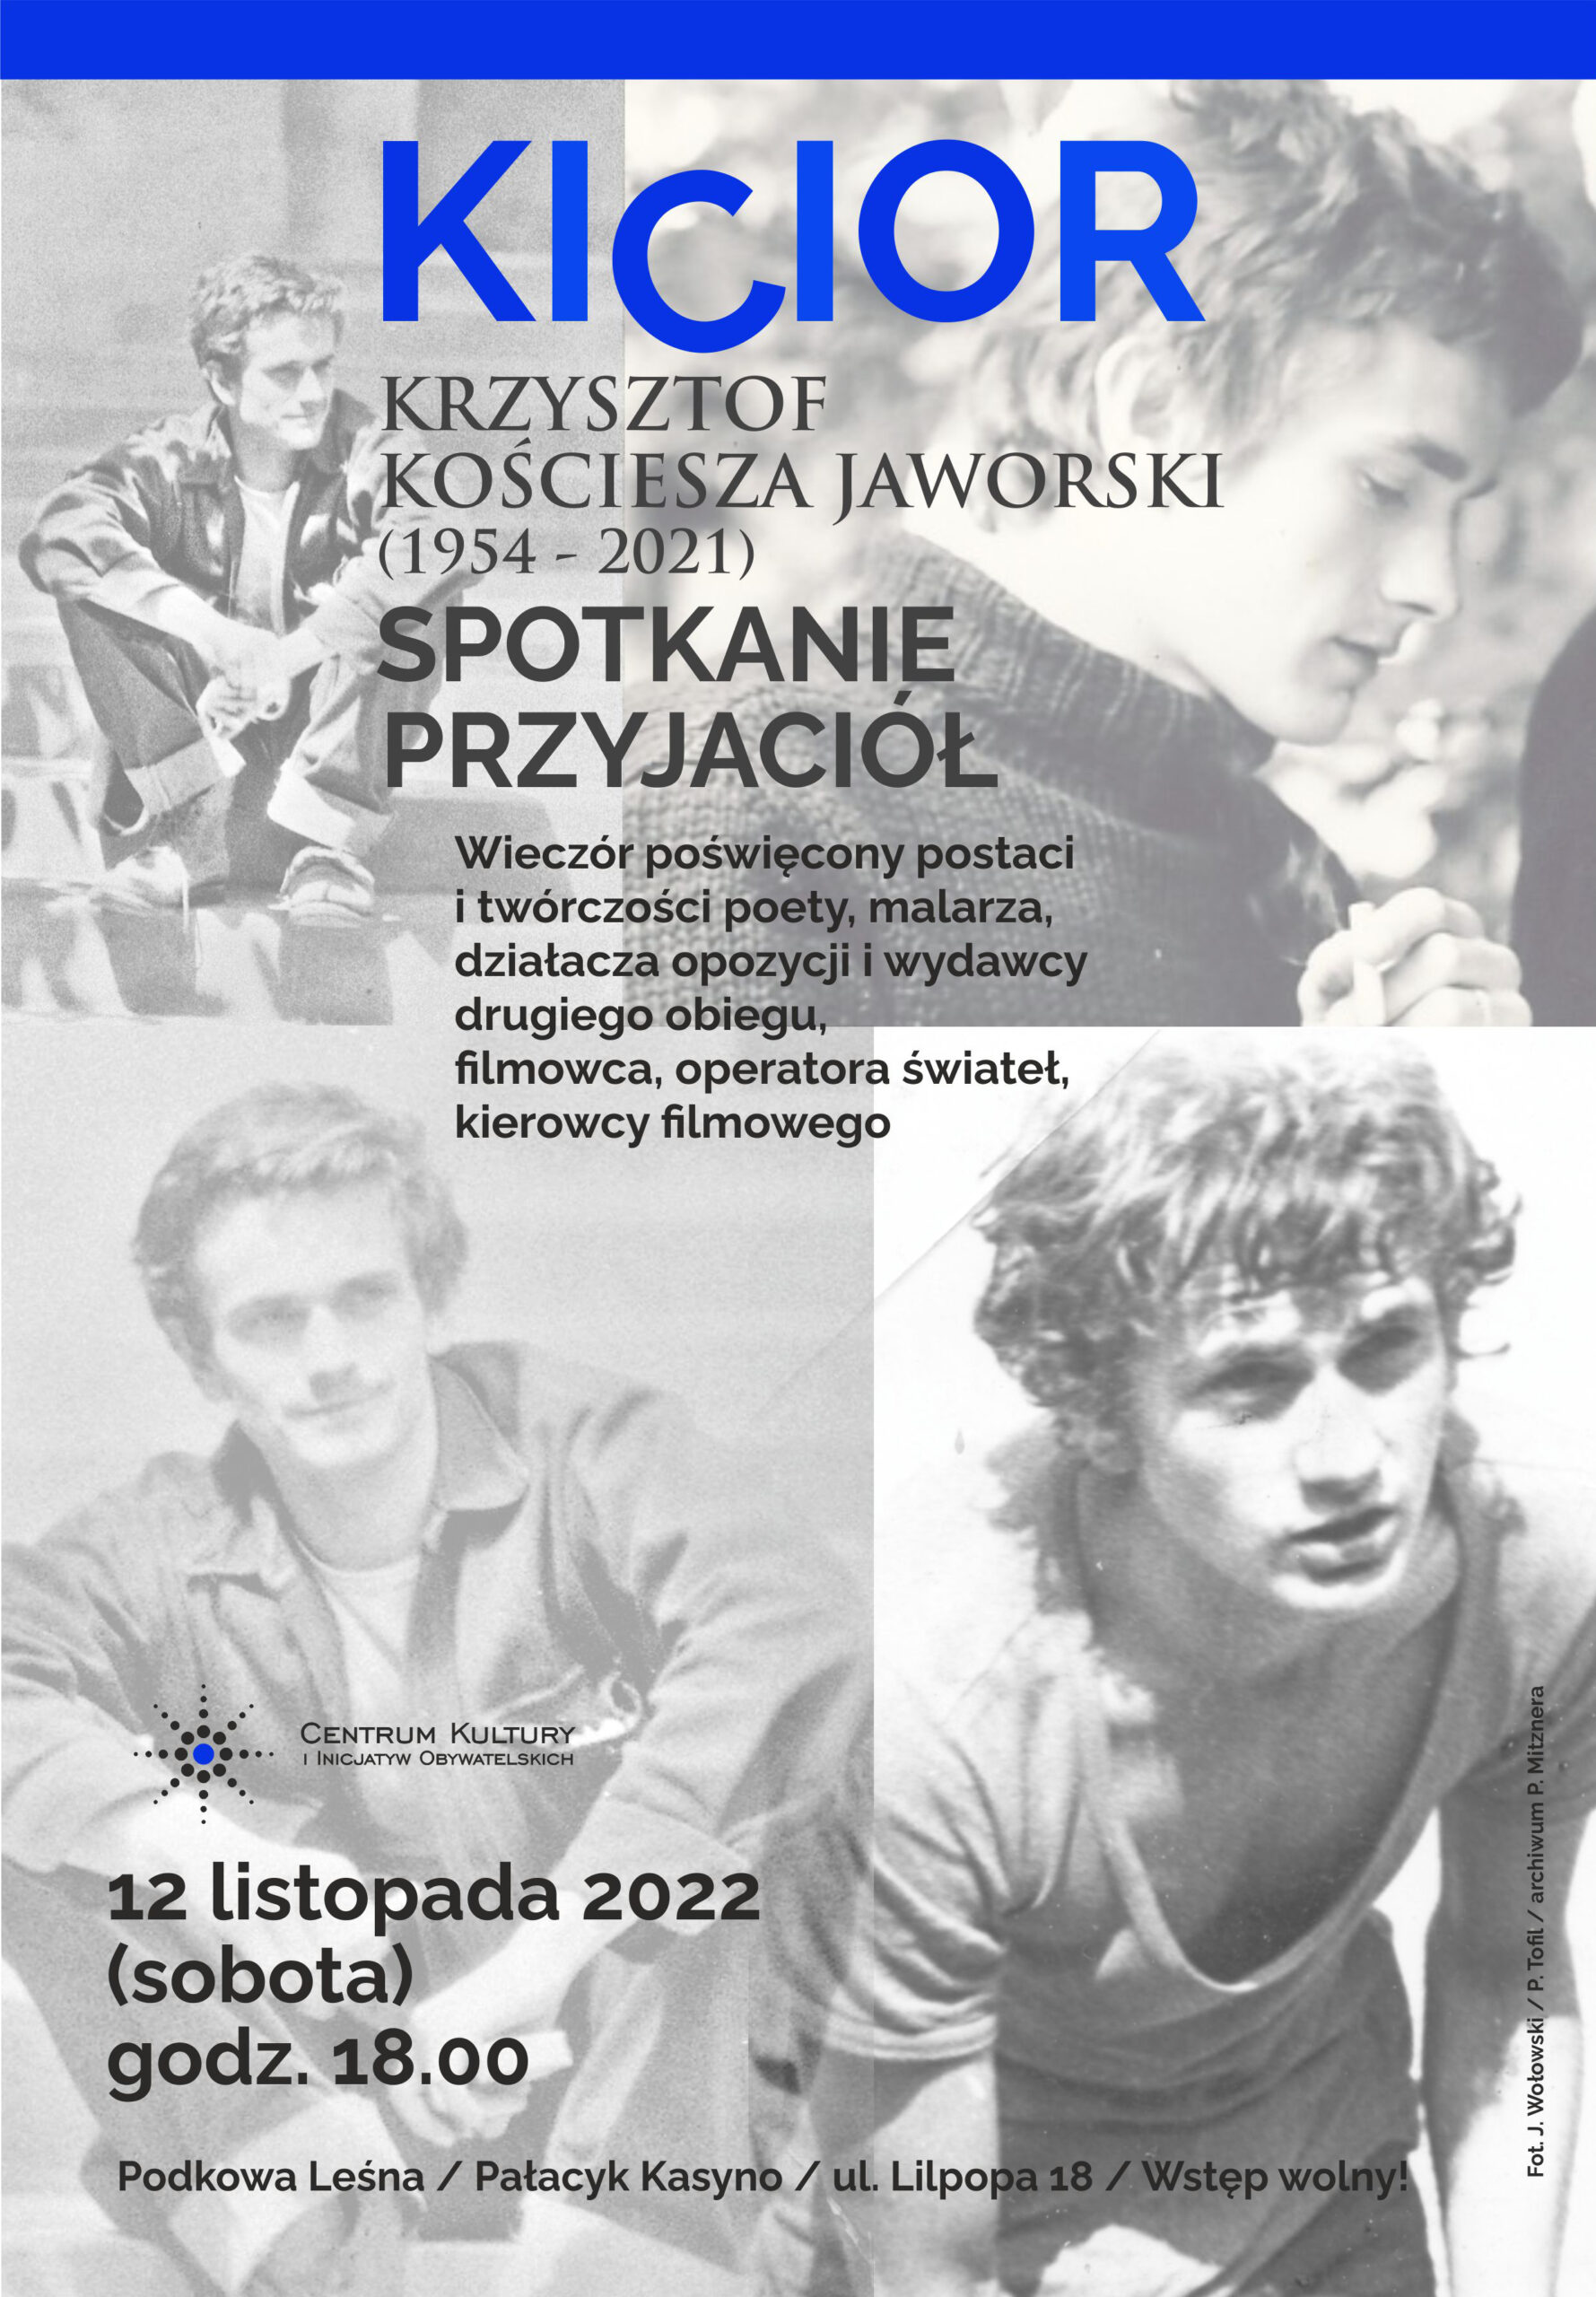 You are currently viewing Spotkanie poświęcone Krzysztofowi Kościeszy Jaworskiemu